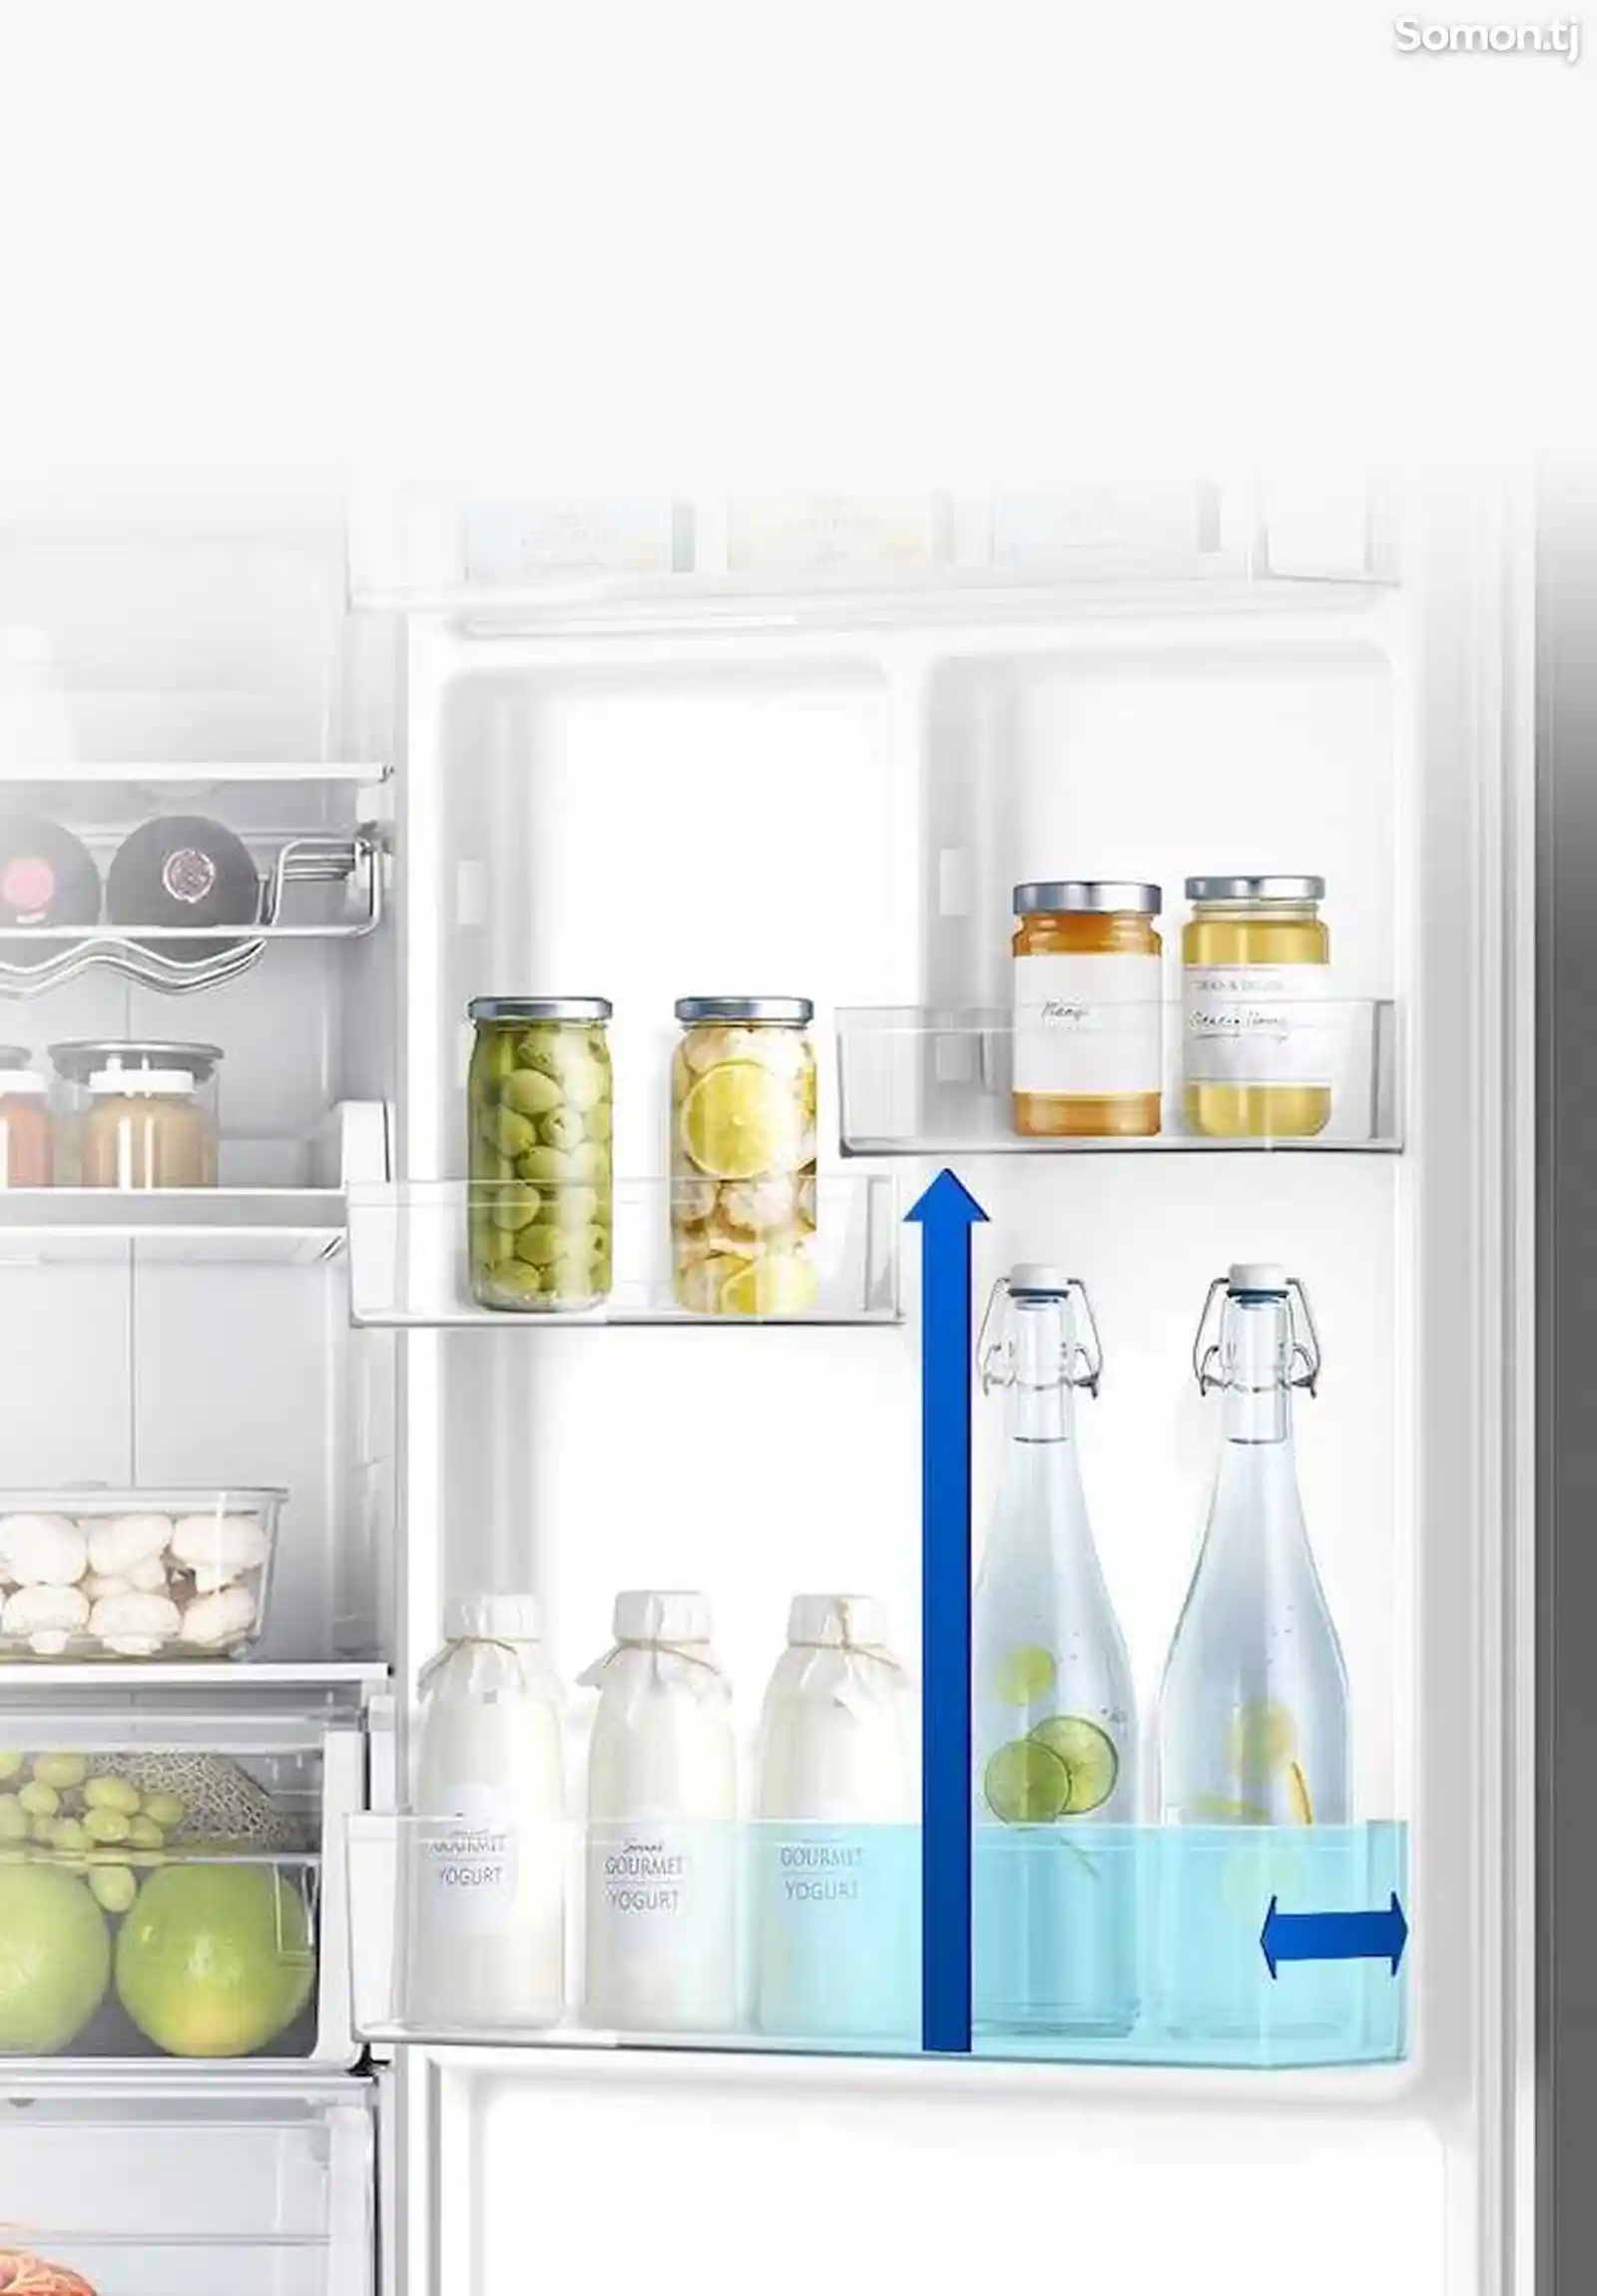 Холодильник Samsung-4